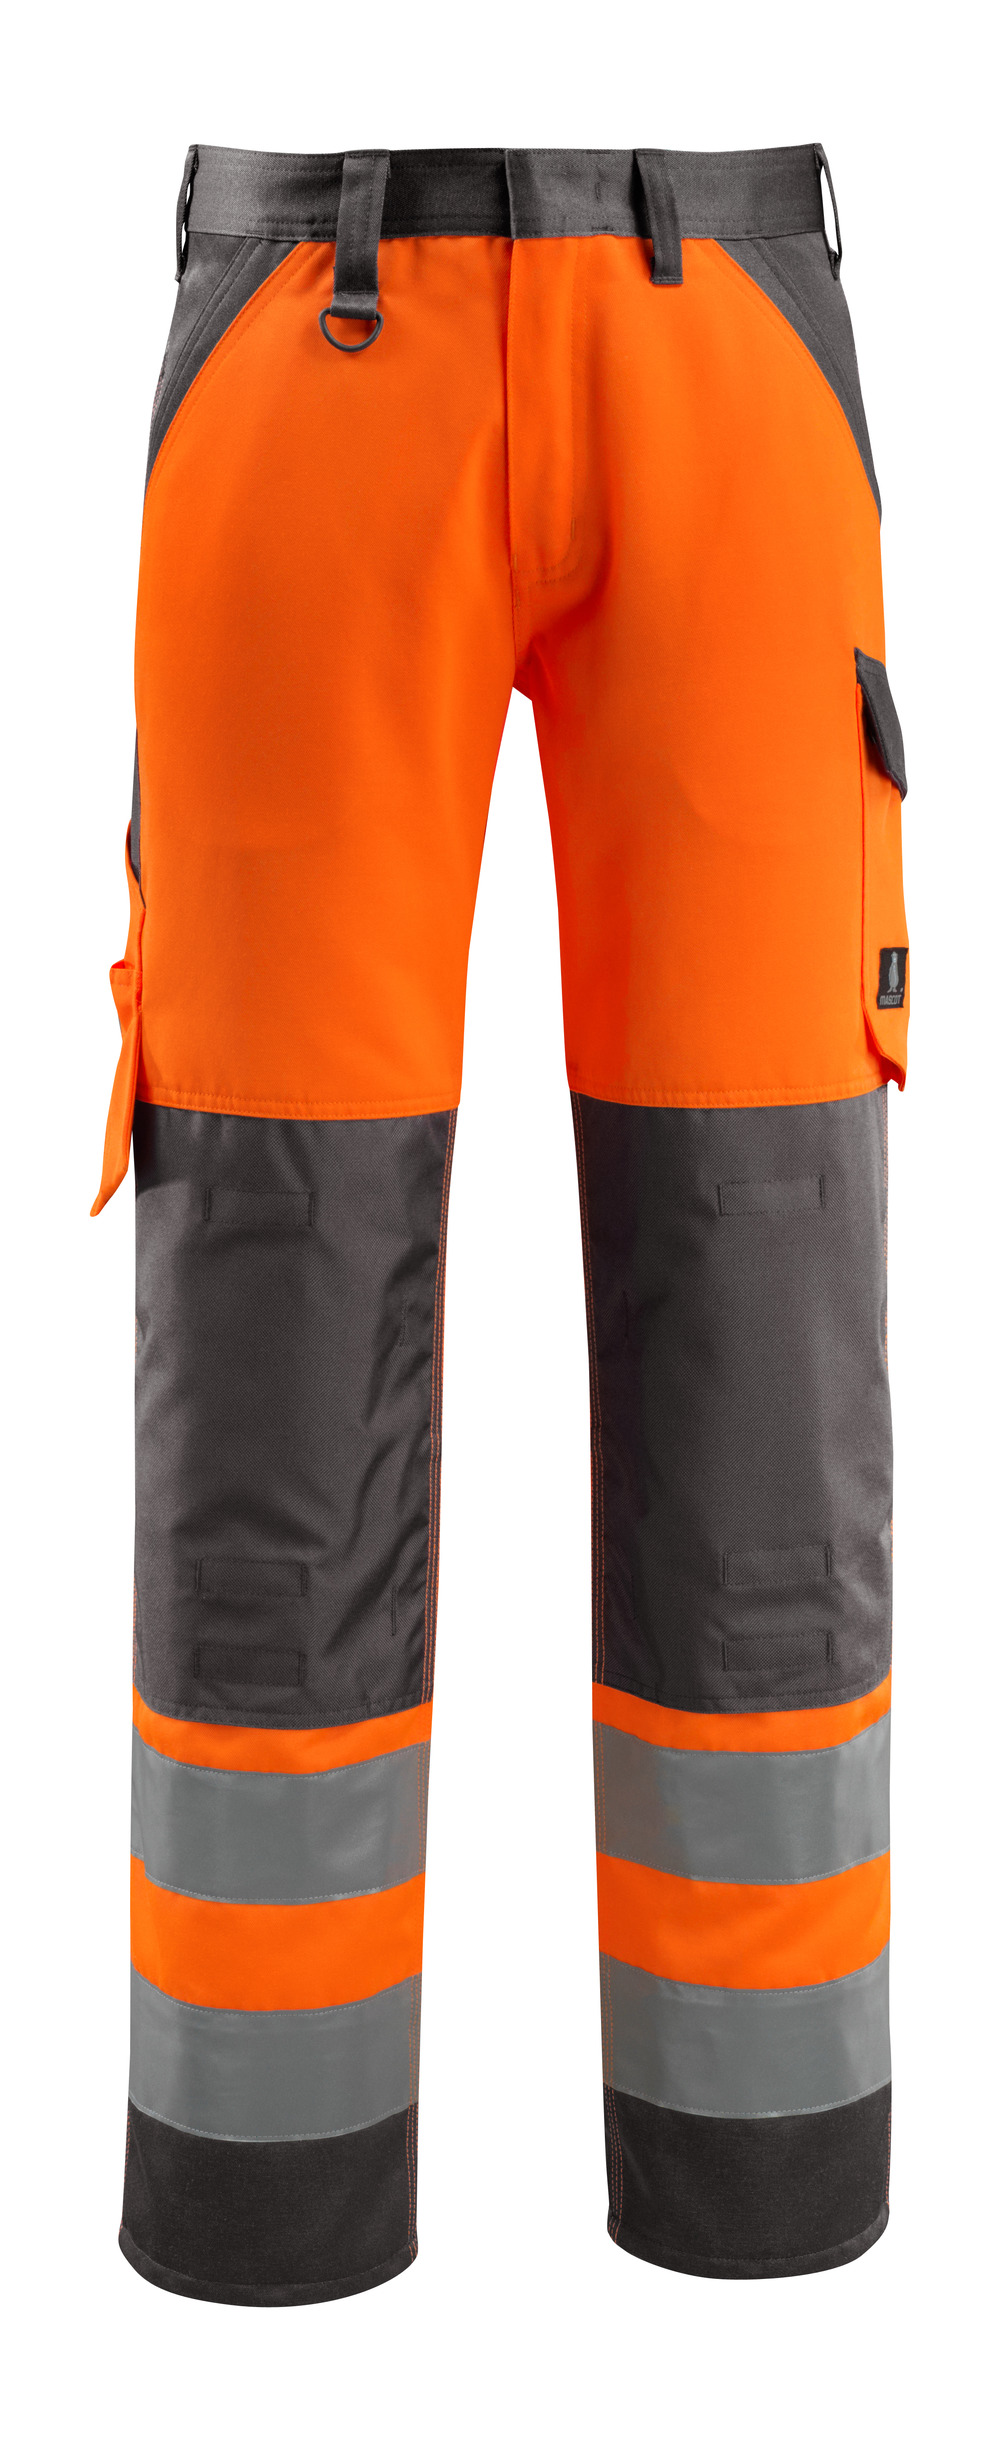 MASCOT-Warnschutz, Warn-Bund-Hose, Maitland,  76 cm, 285 g/m², orange/dunkelanthrazit

